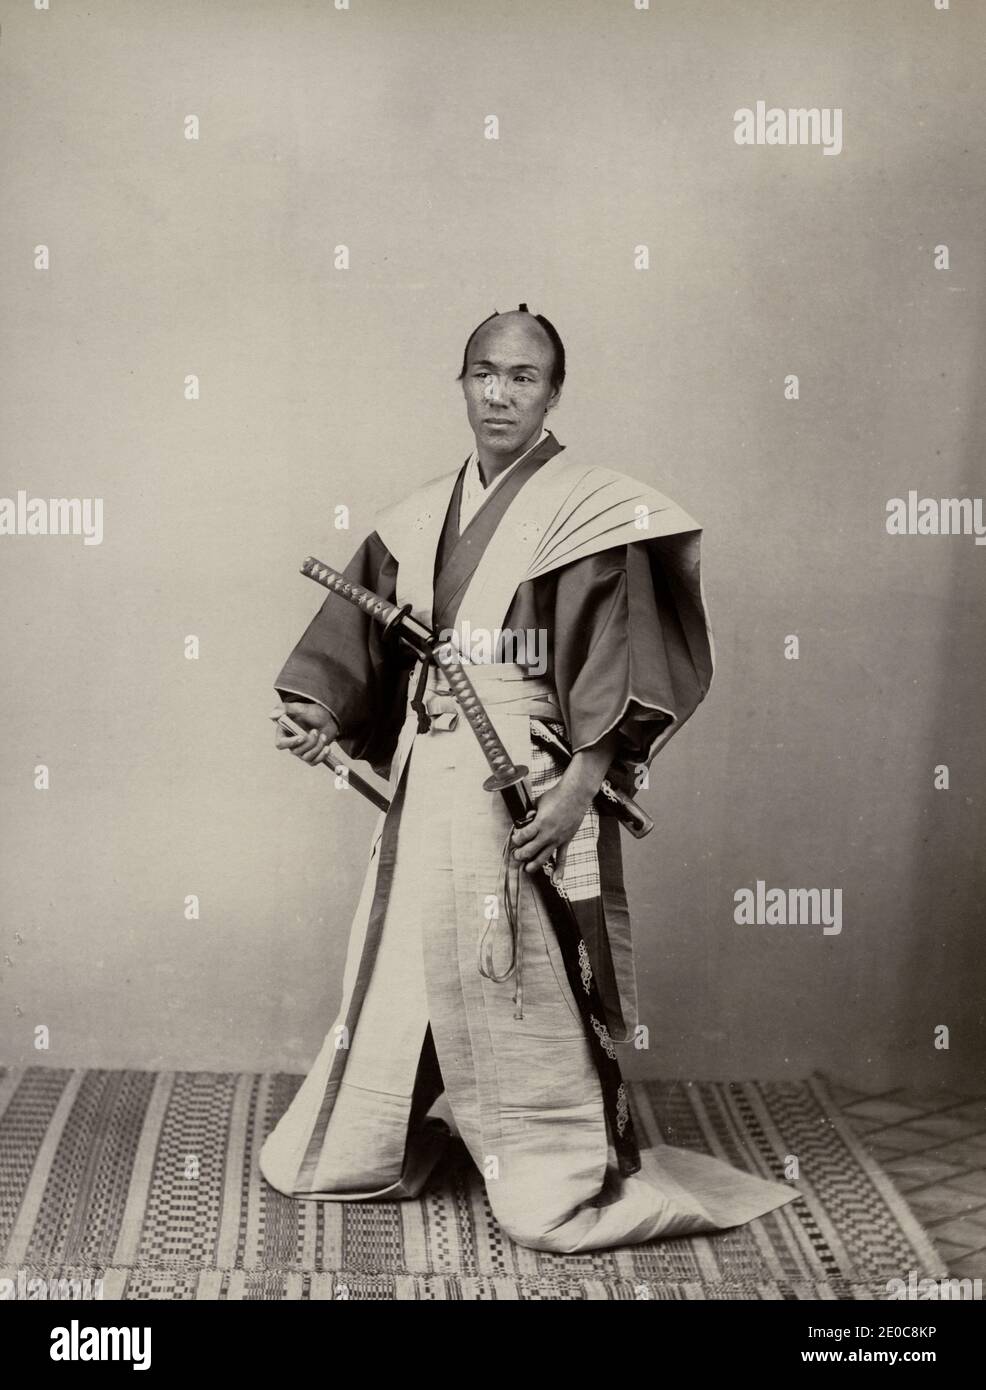 Vintage-Fotografie aus dem 19. Jahrhundert - Samurai mit zwei Schwertern in langen Hosen, Studio-Setting. Japan, um 1880. Wahrscheinlich von einem Schauspieler gestellt. Stockfoto